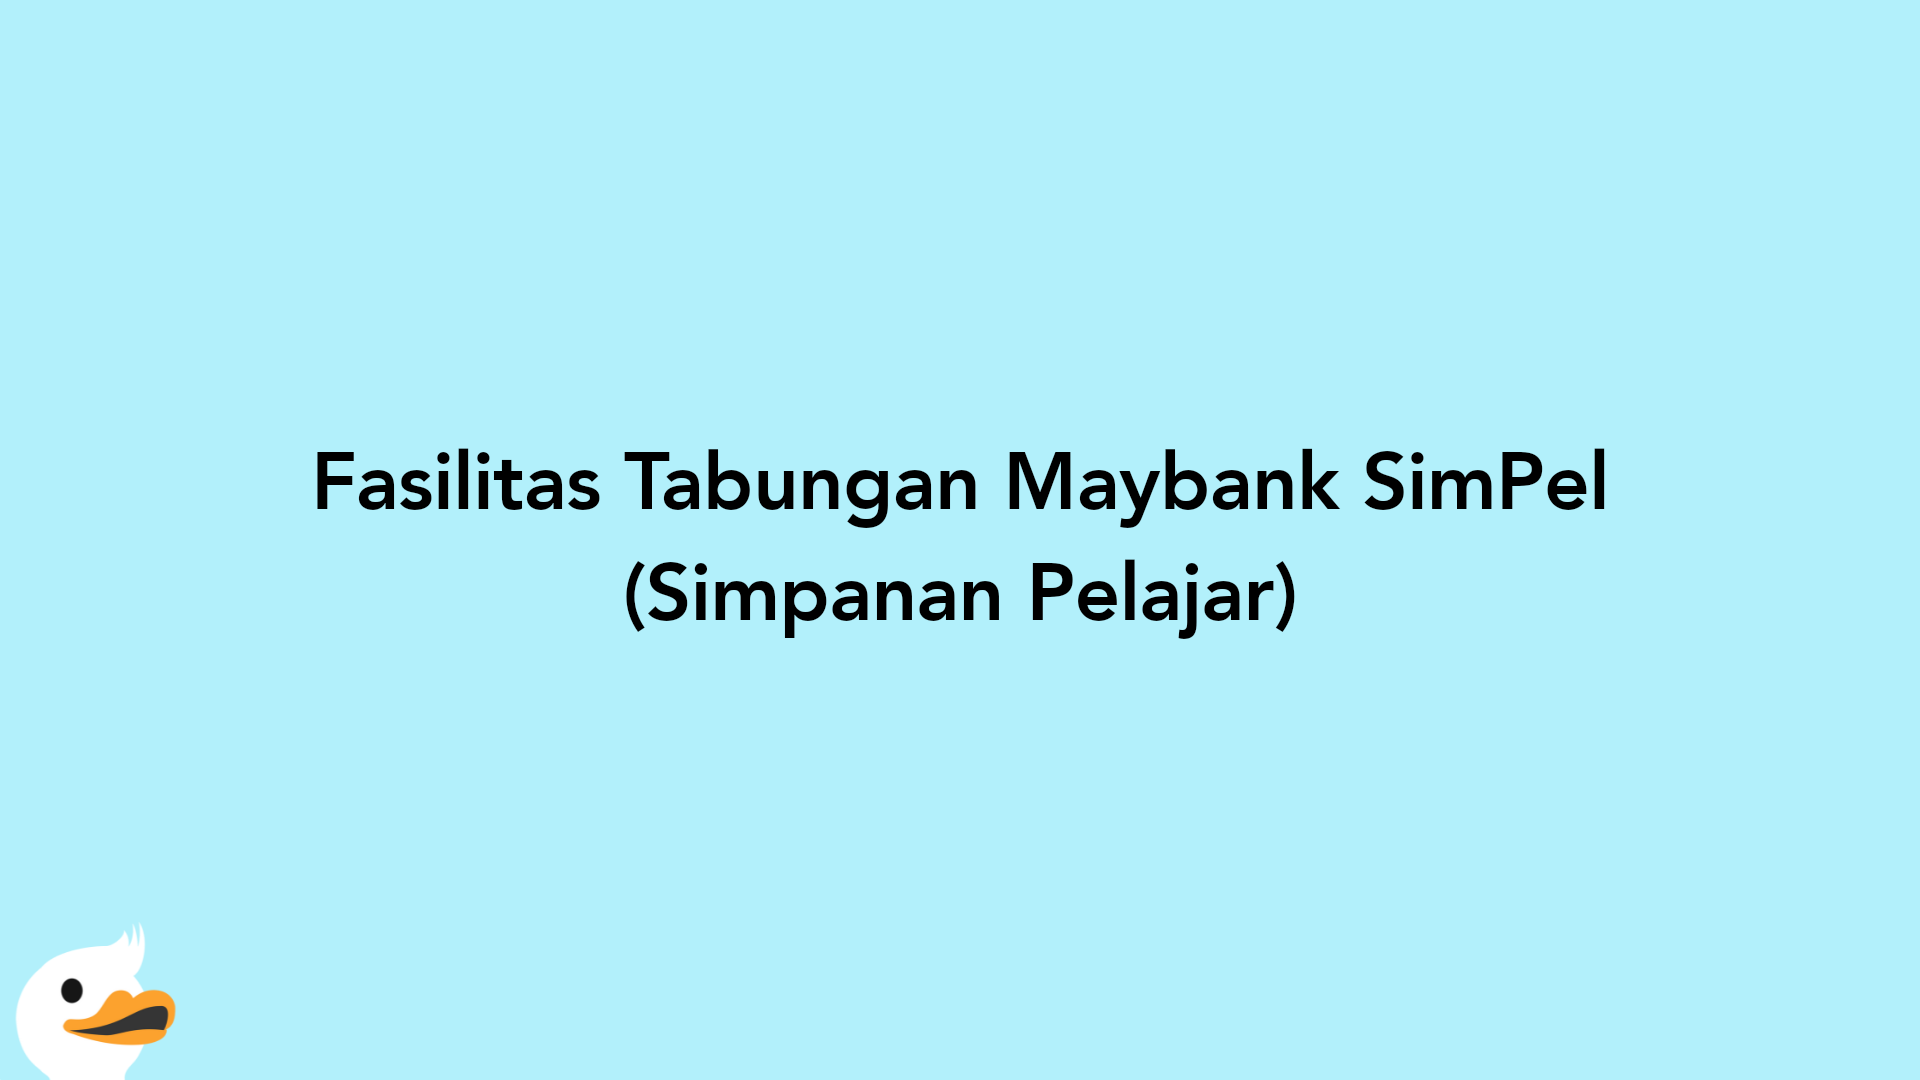 Fasilitas Tabungan Maybank SimPel (Simpanan Pelajar)